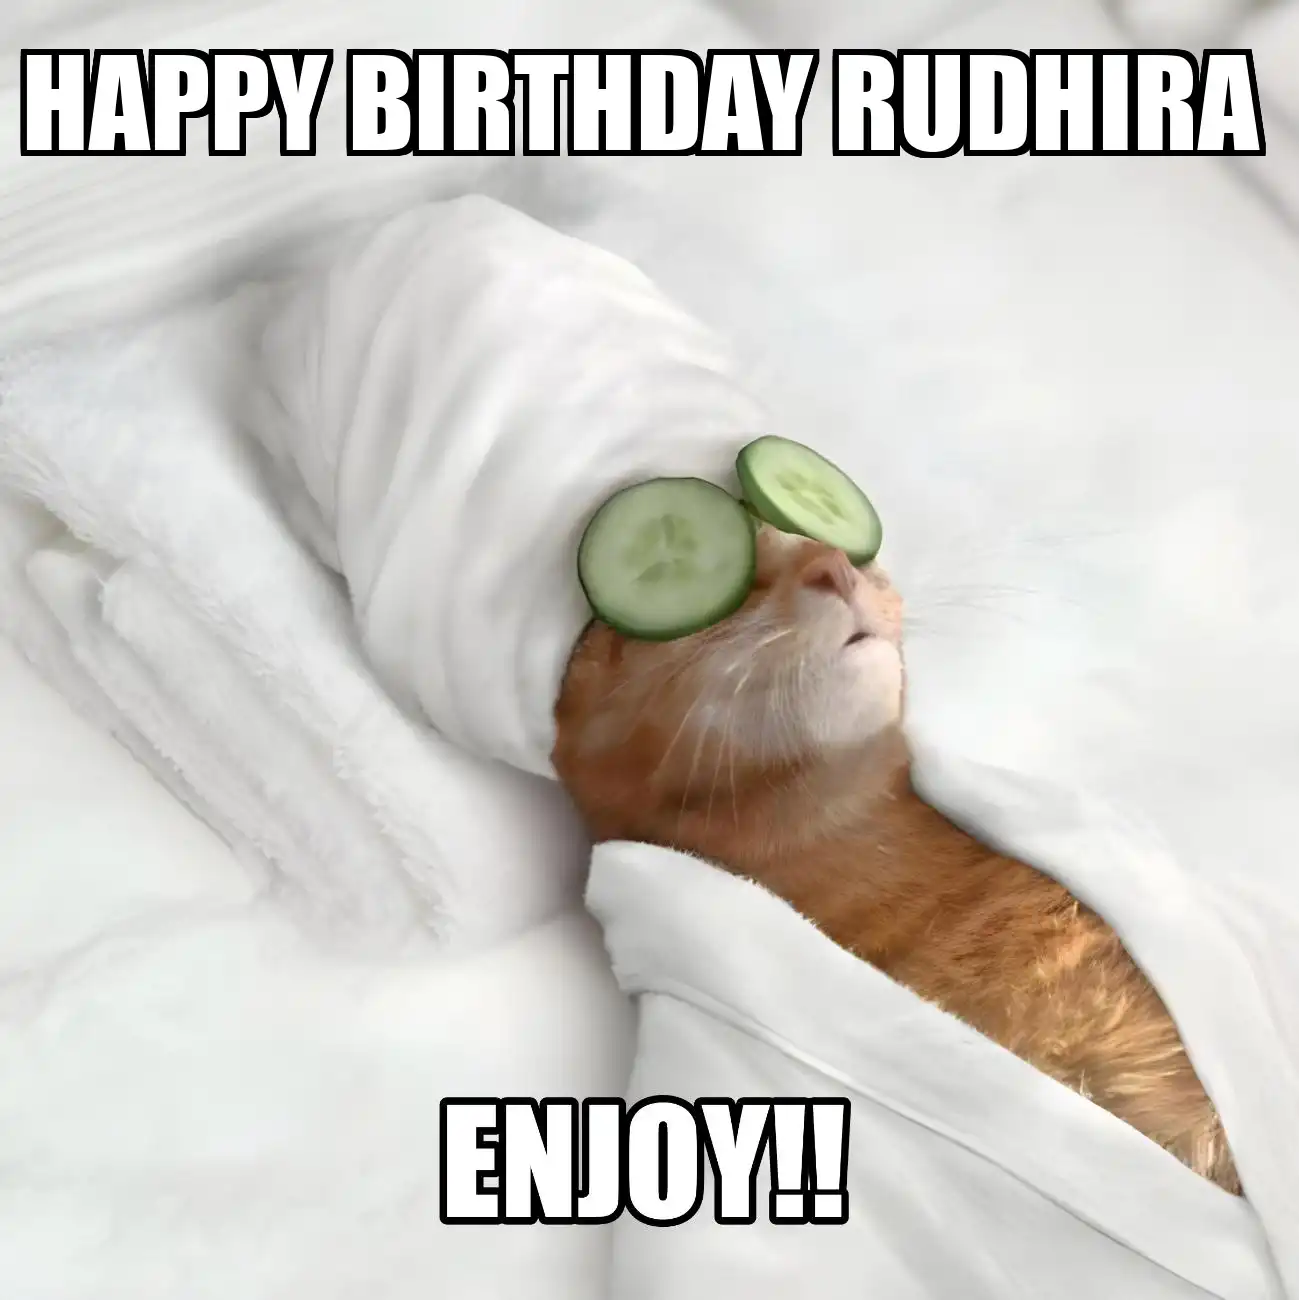 Happy Birthday Rudhira Enjoy Cat Meme